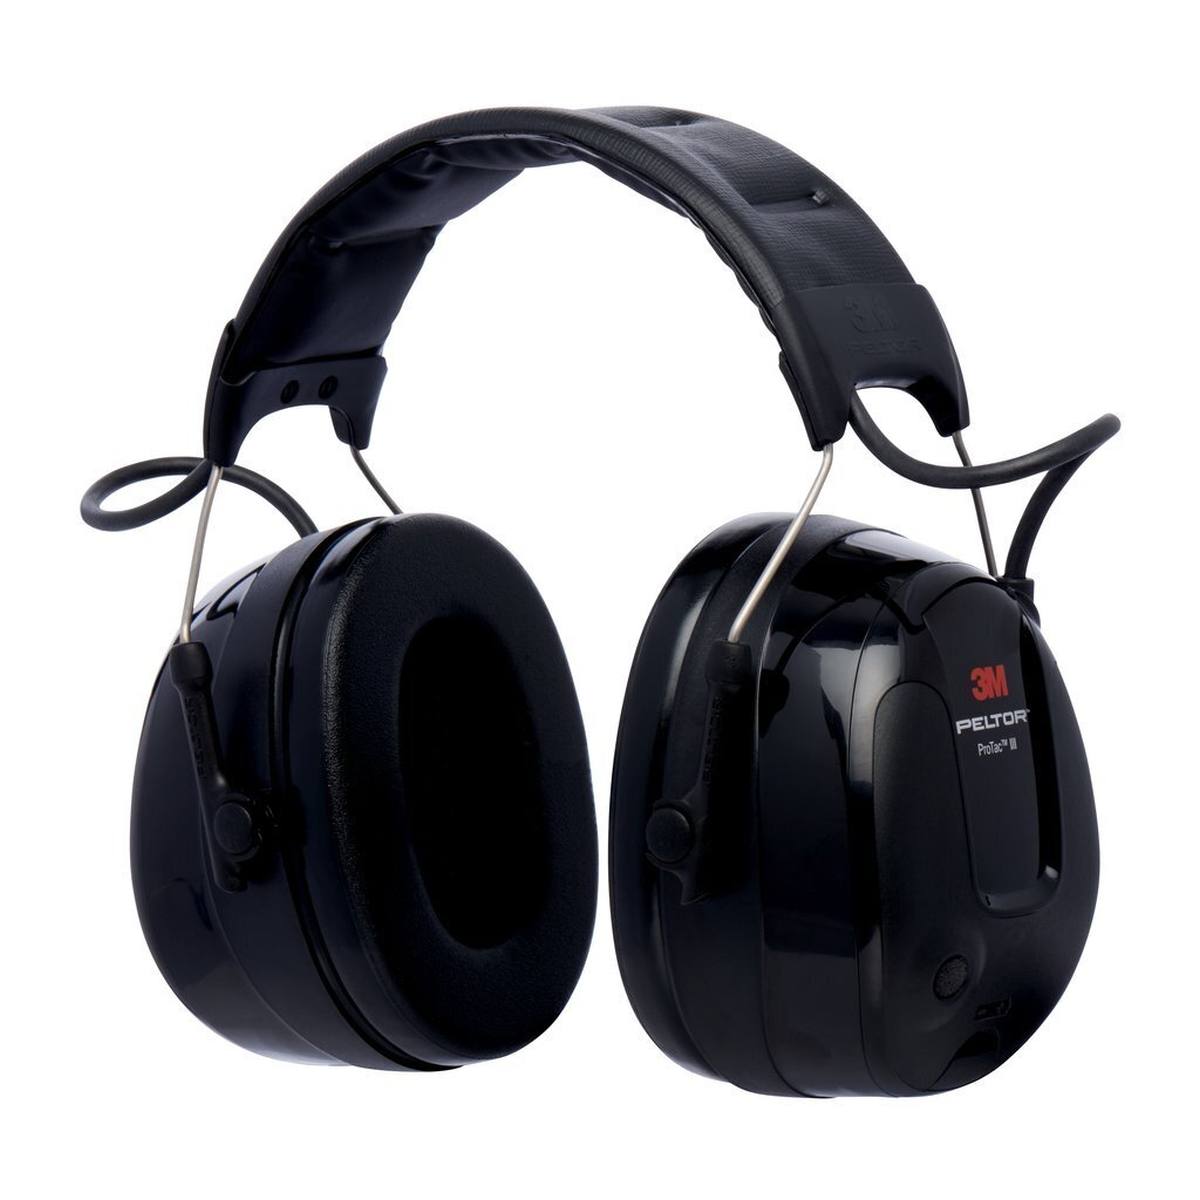 3M PELTOR ProTac III headset, zwart, helmuitvoering, met actieve, niveau-afhankelijke dempingstechnologie voor het waarnemen van omgevingsgeluid, SNR=31 dB, scwar